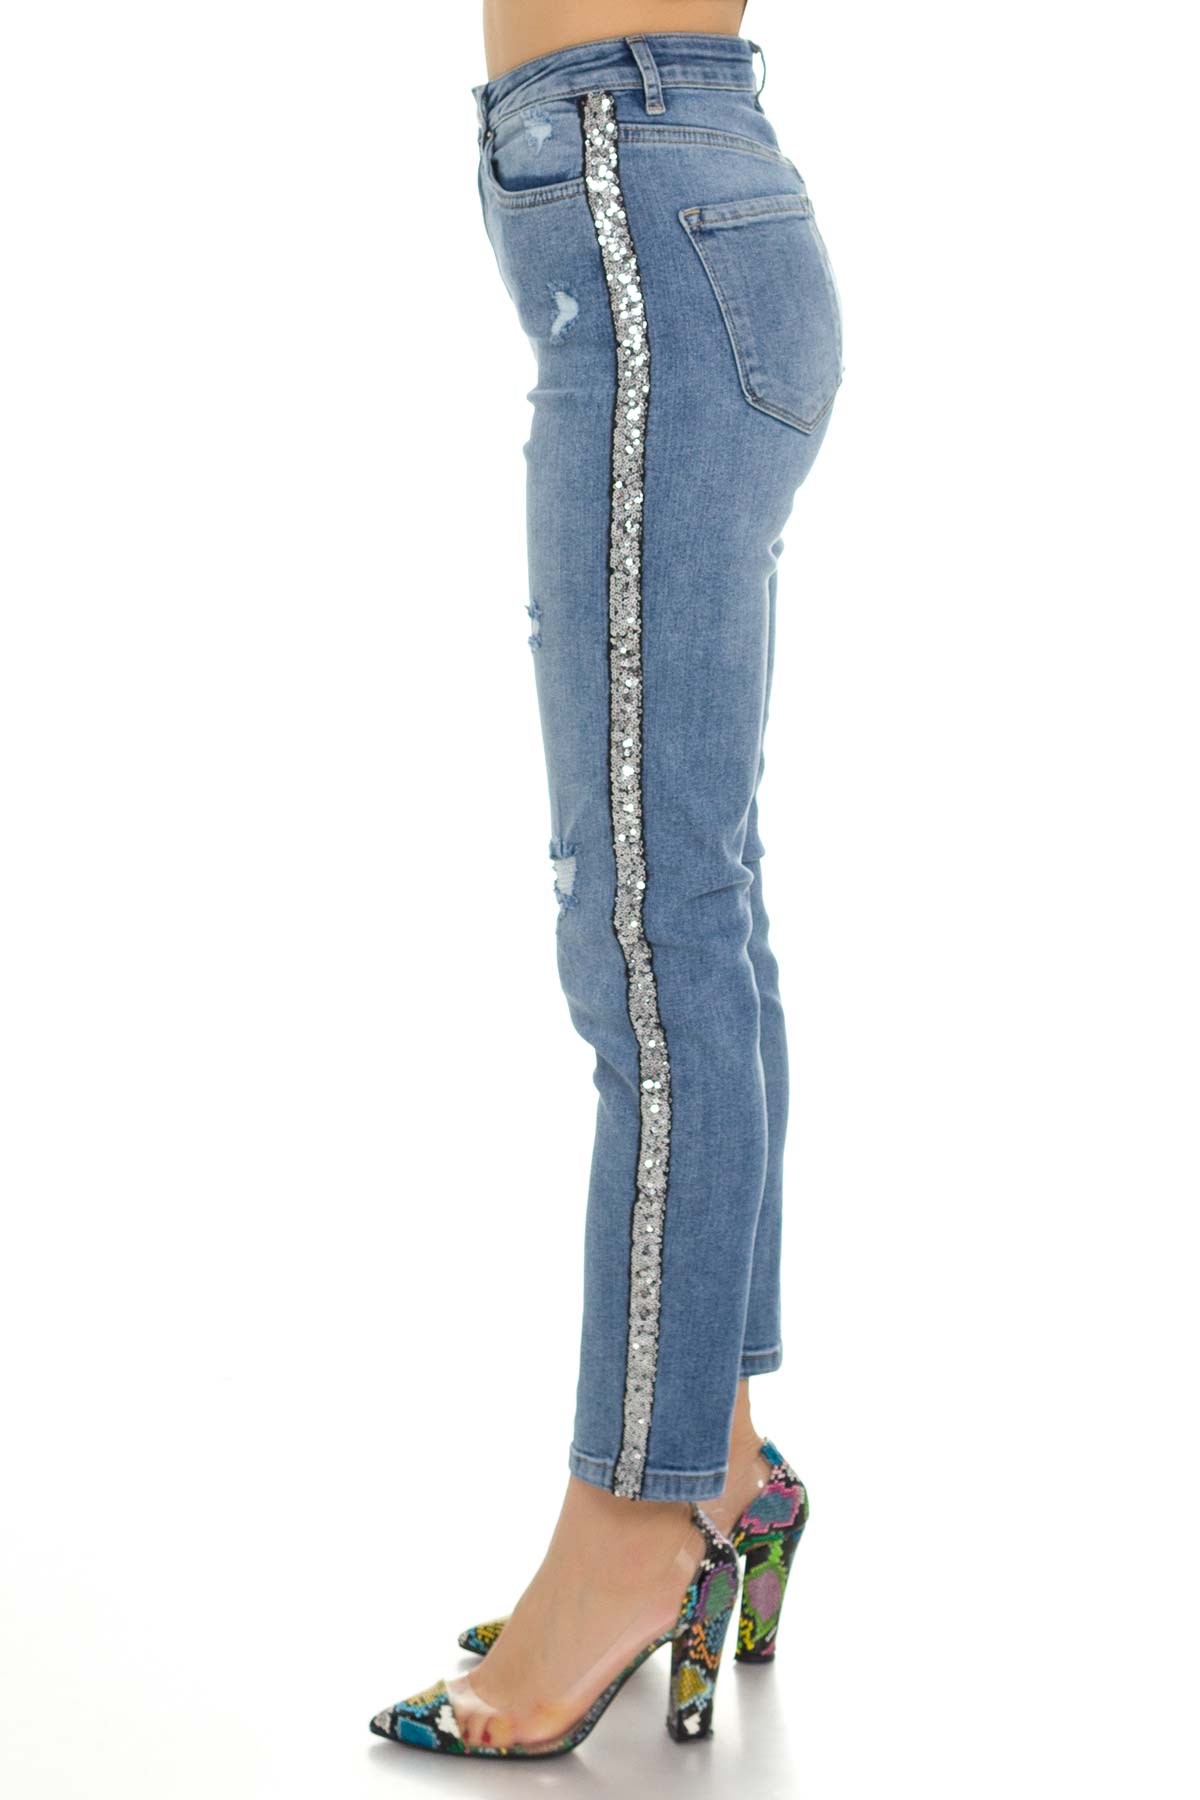 Yanı Pulpayet Şeritli Yırtıklı Kadın Kot Pantolon